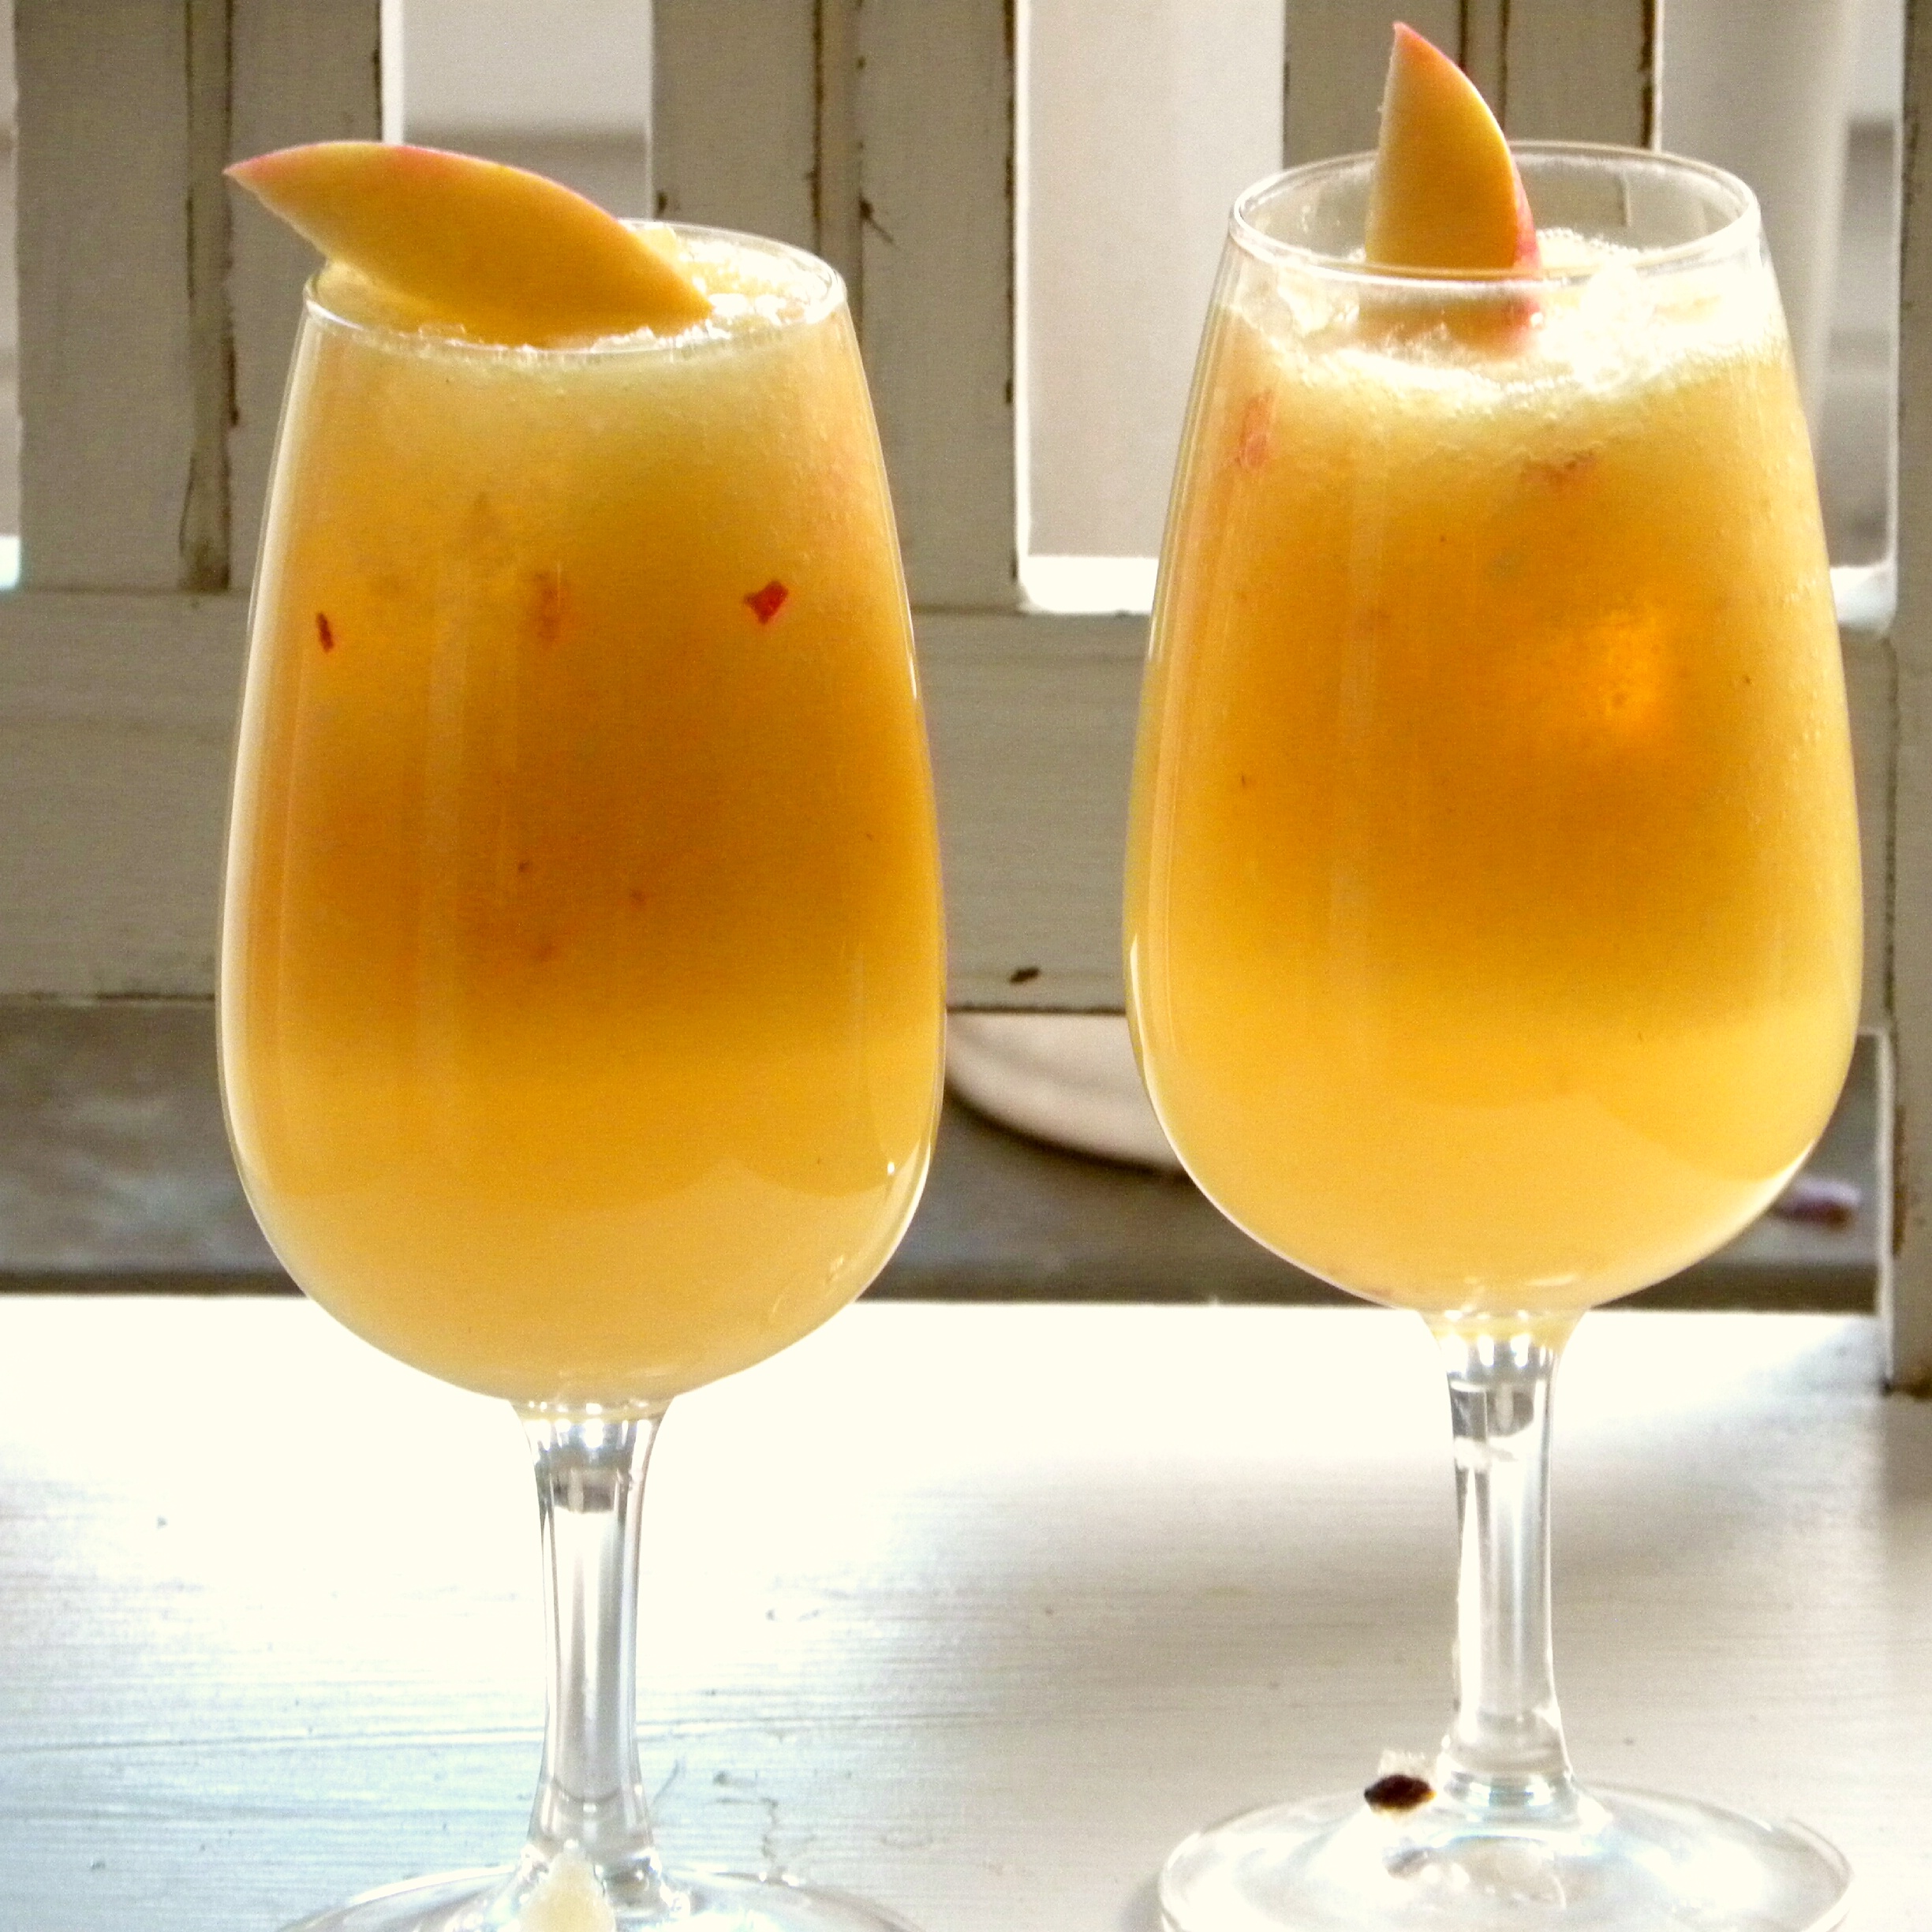 Äppeldrink med ingefära i två glas